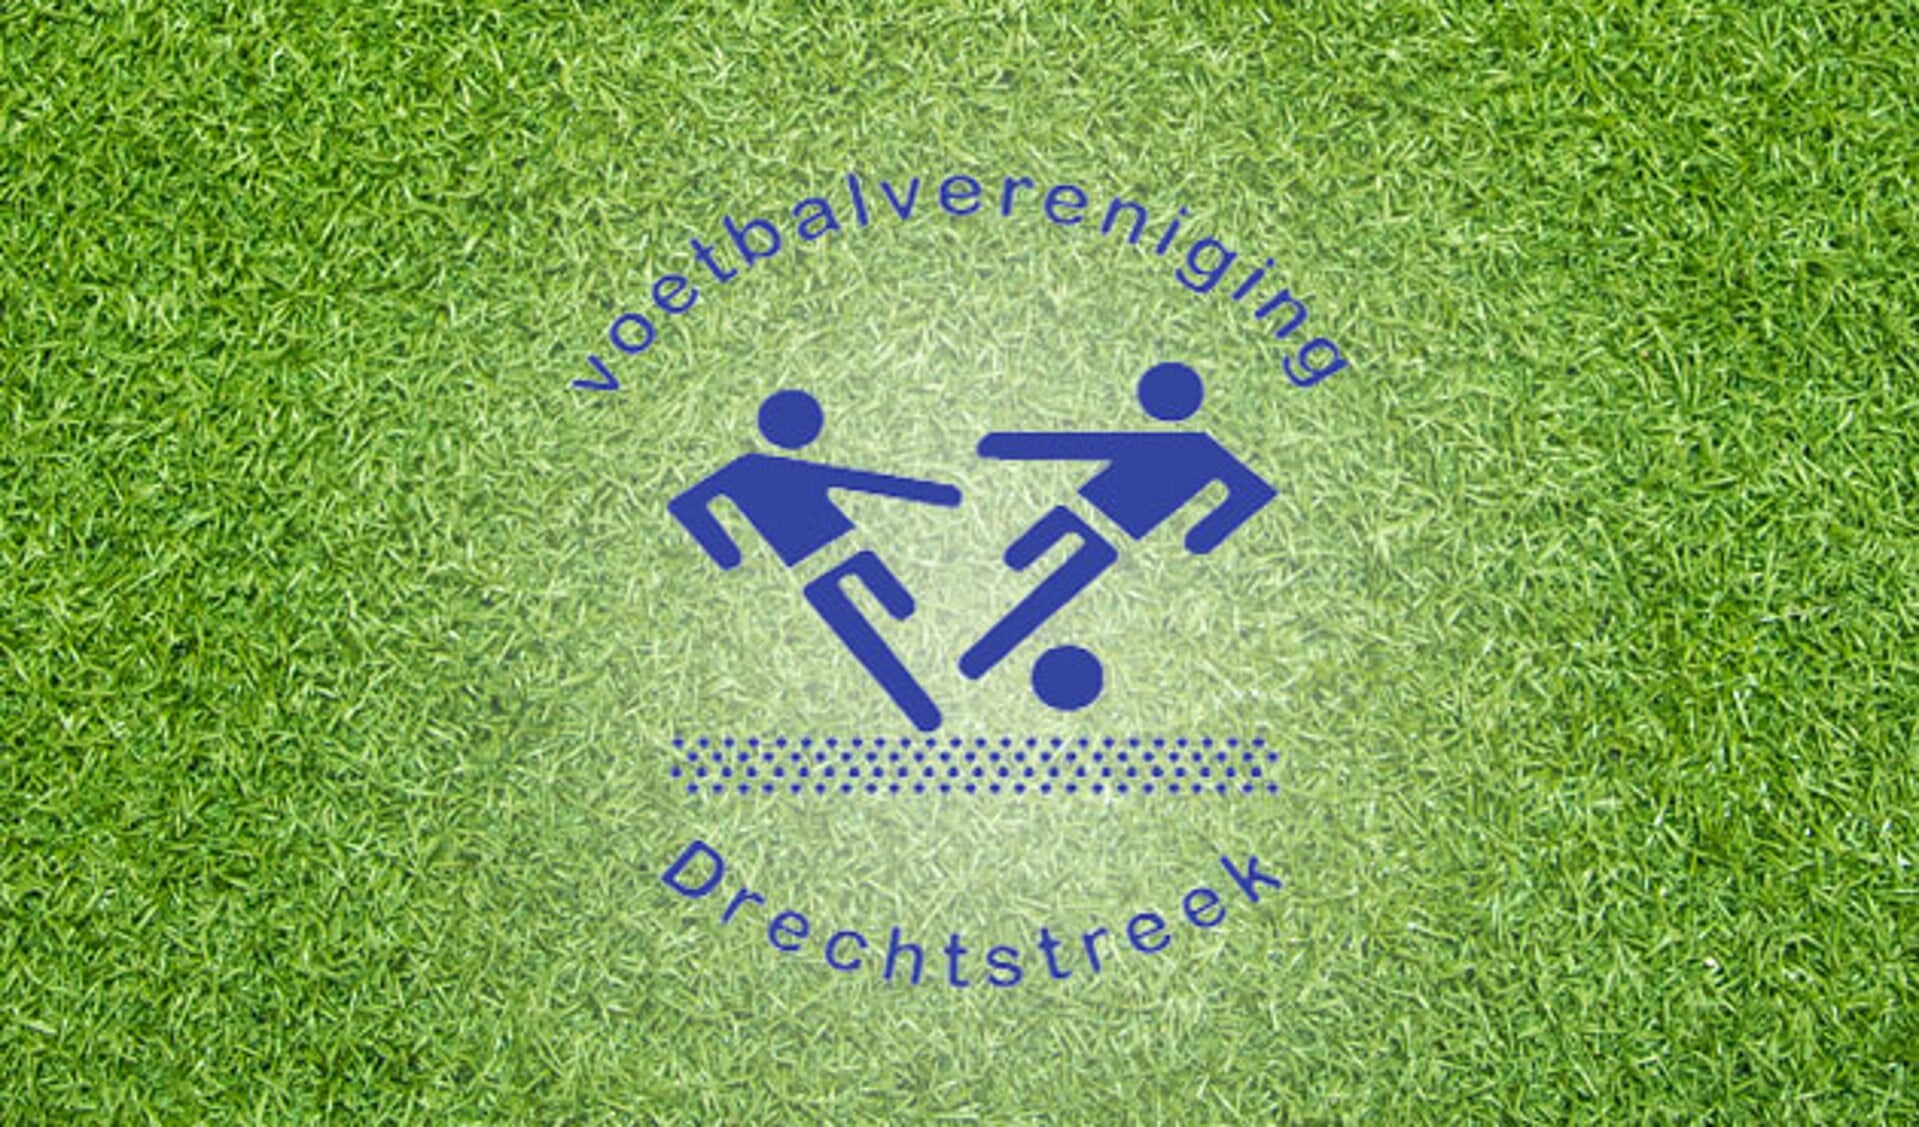 Drechtstreek gaat samenwerken met FC Dordrecht